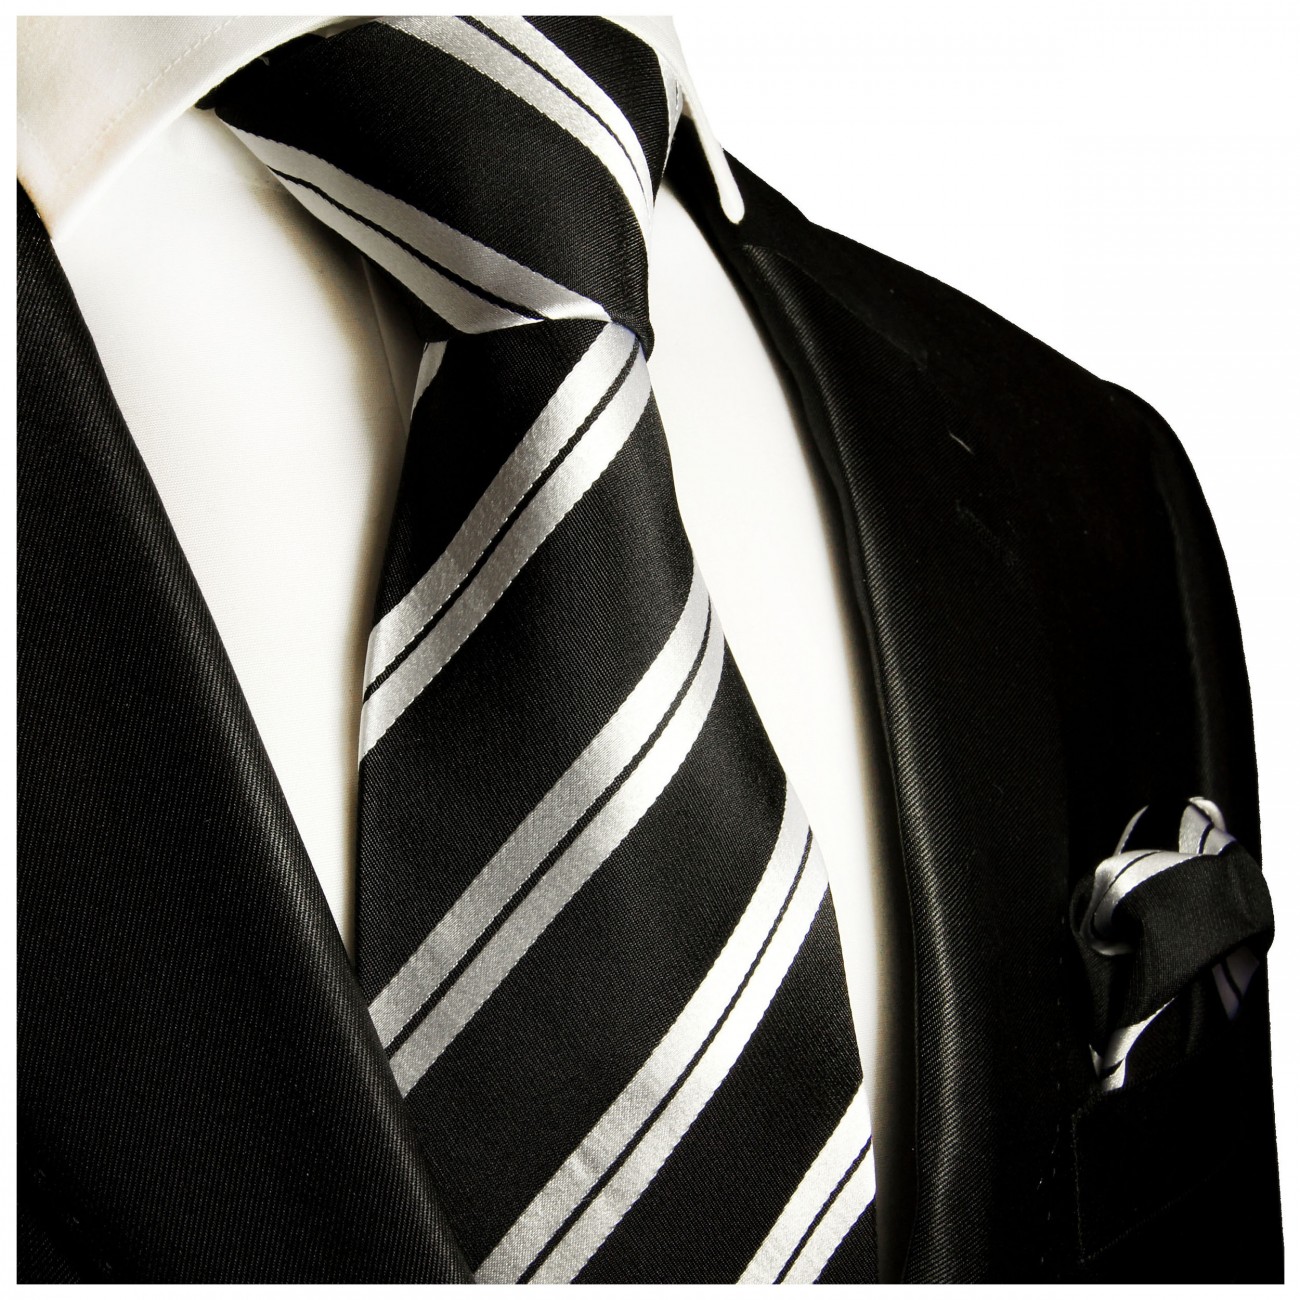 Krawatte schwarz silber gestreift Seide mit Einstecktuch